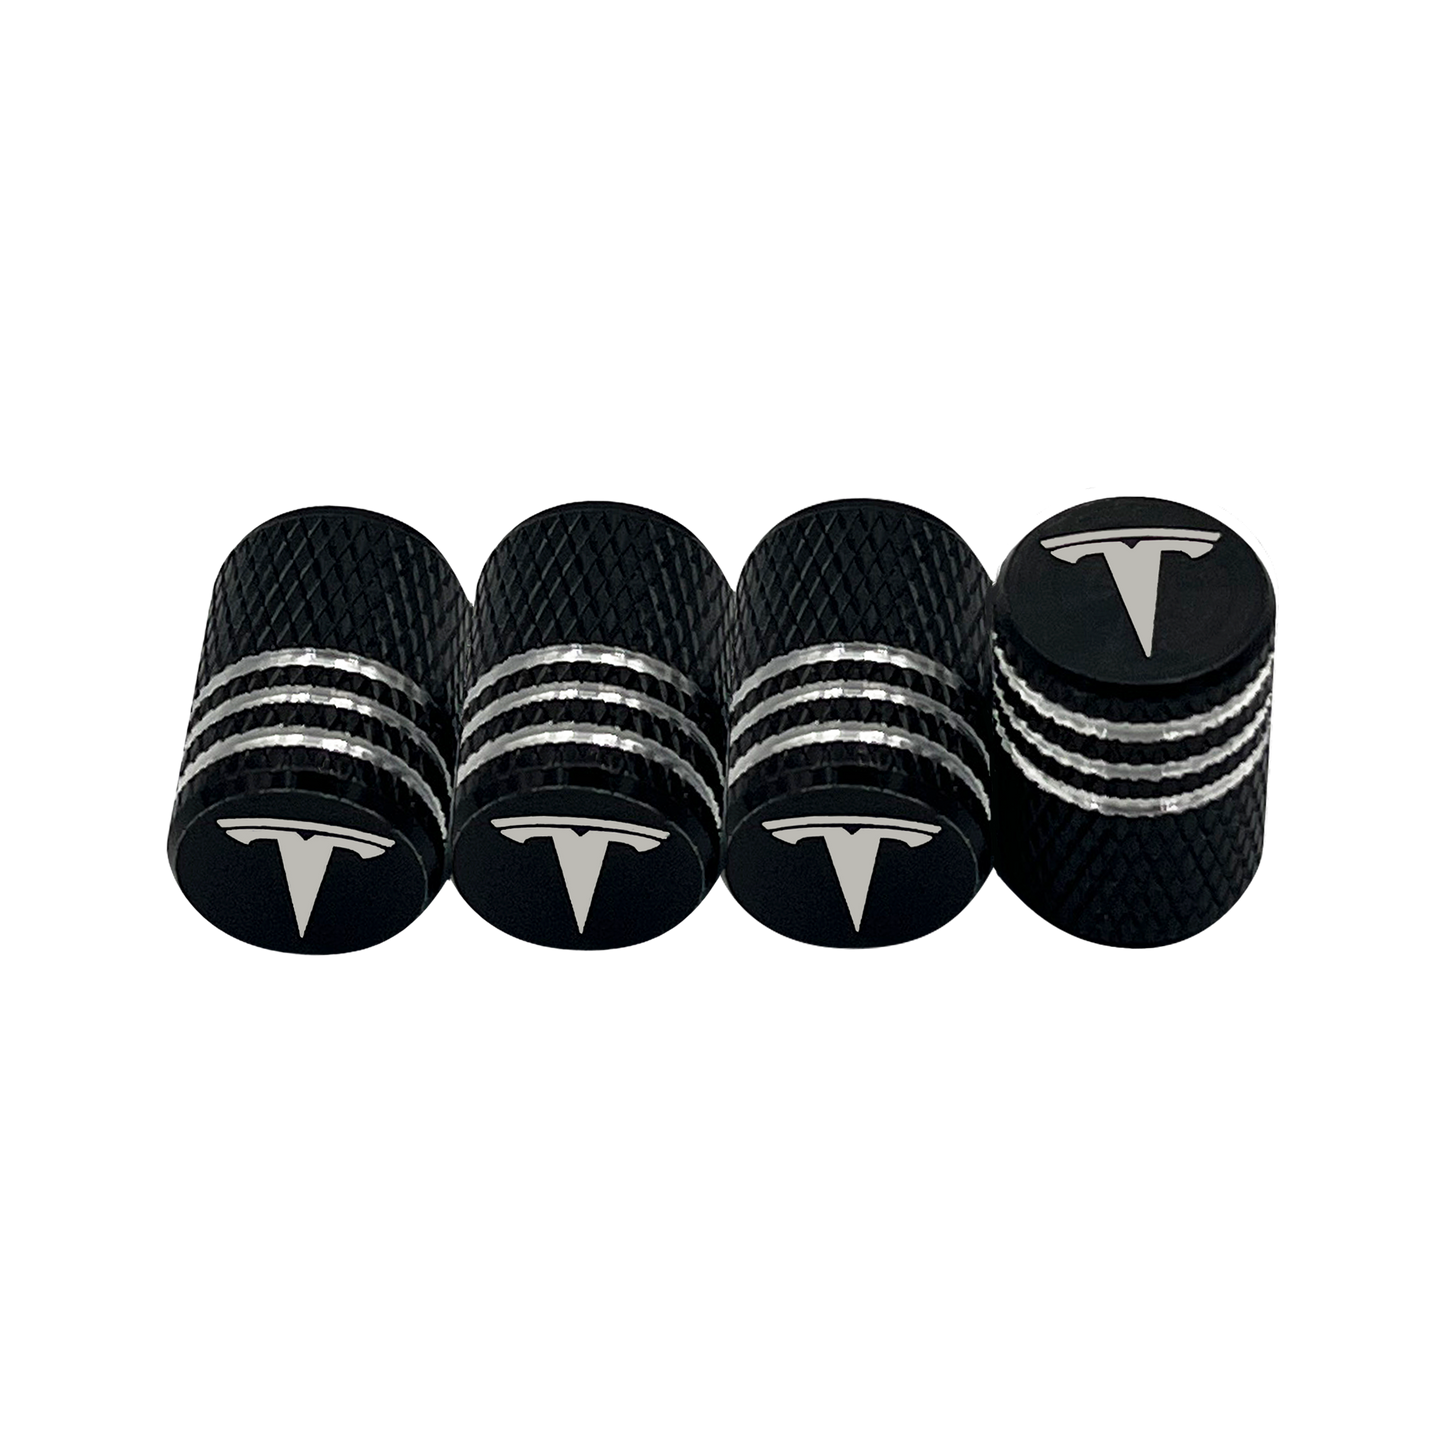 4 pcs. Black &amp; Chrome Tesla Valve Caps